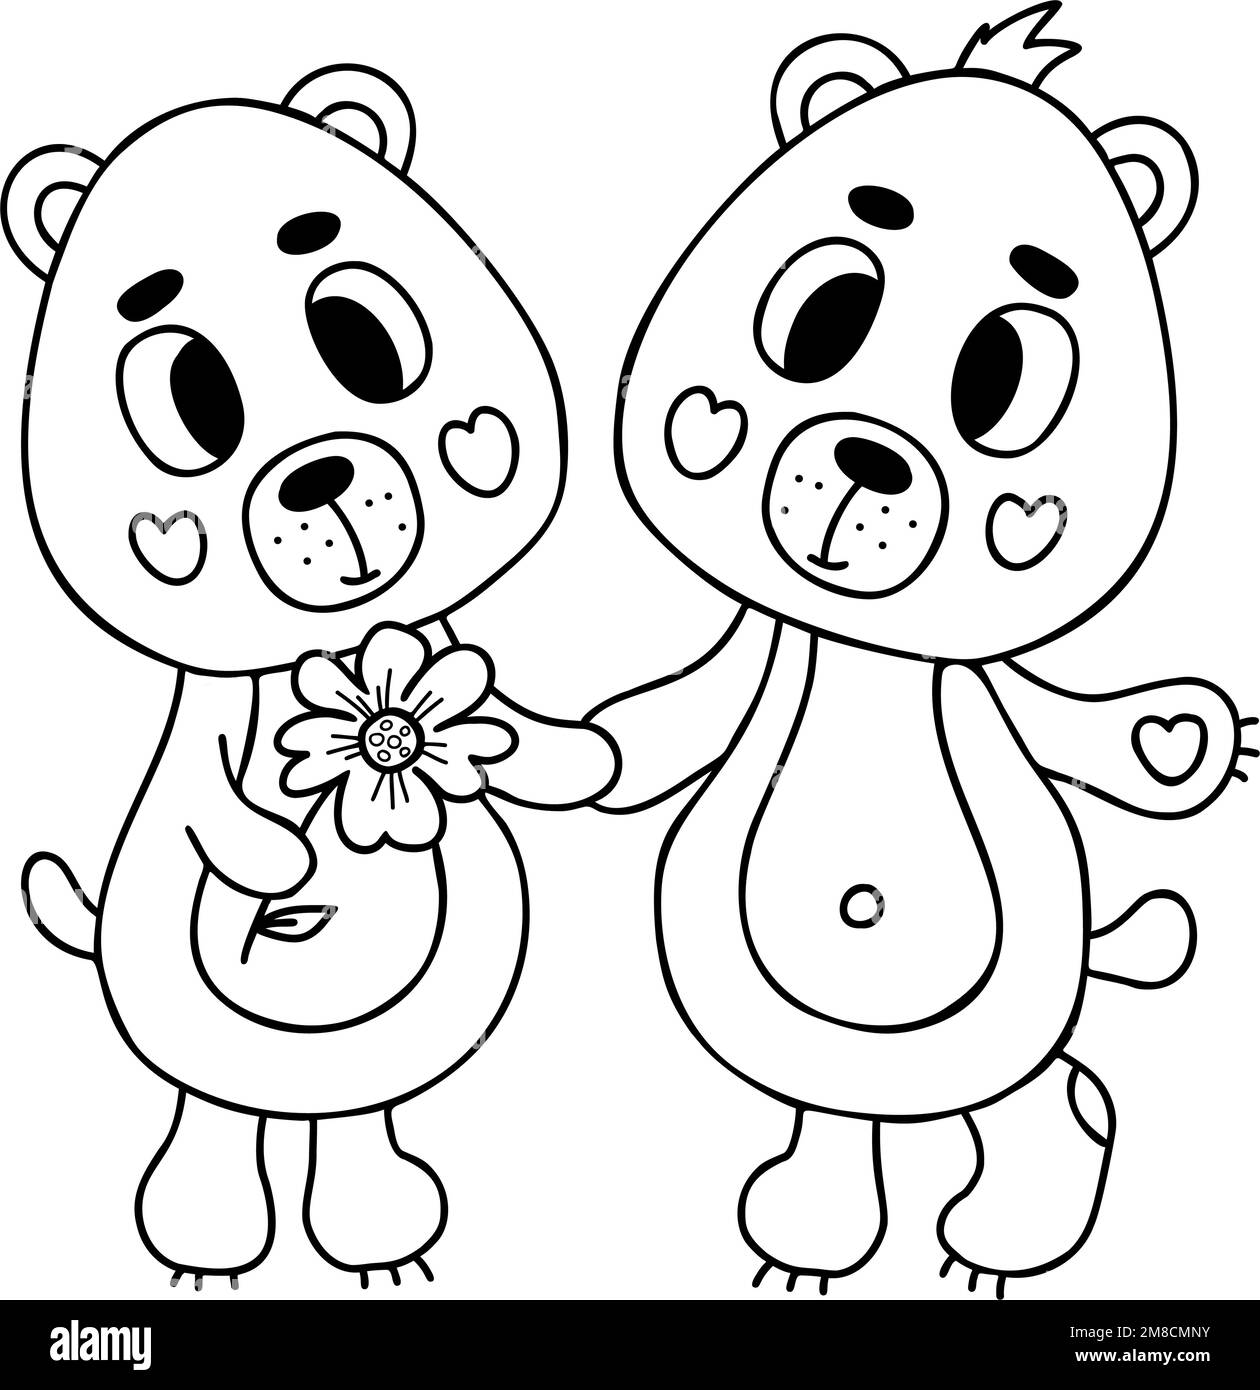 Süßes Paar in Liebesbären mit Blume. Vektorgrafik im Kritzelstil. Lustige niedliche Tierfiguren. Umrisszeichnung Stock Vektor